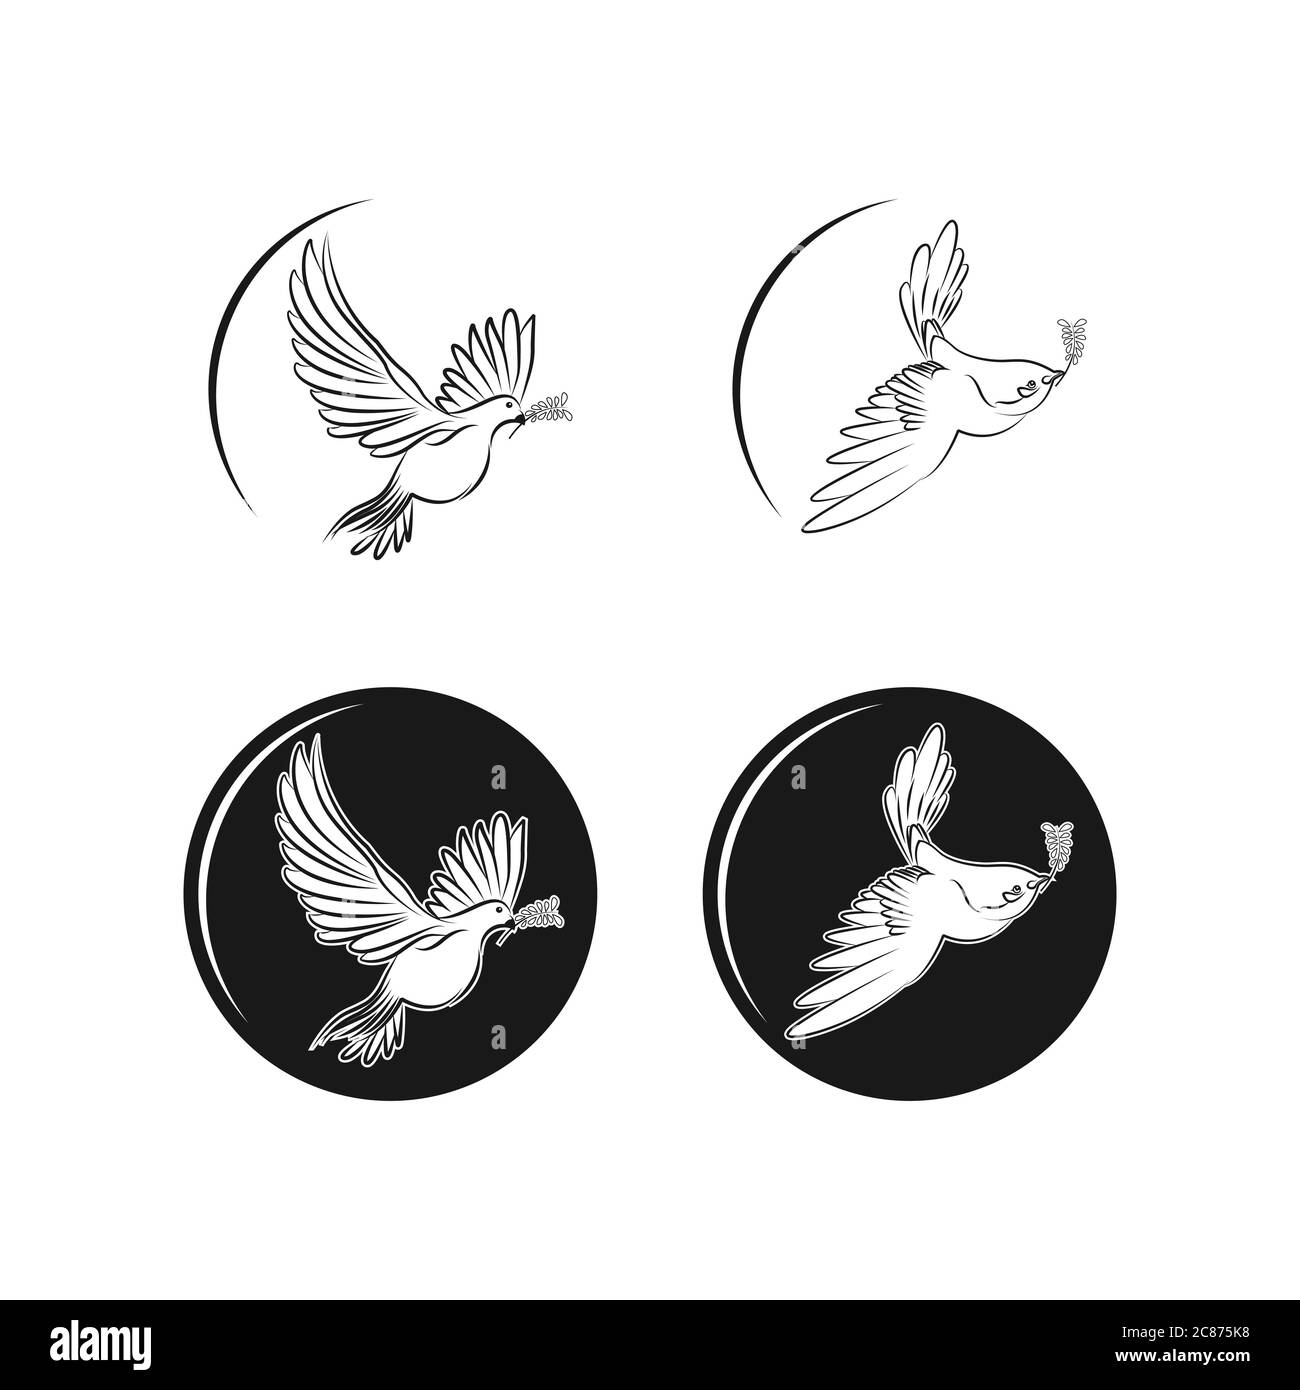 Astratto volante uccello logo disegno profilo style.Flying uccello foglia ramo santo logo vettore arte illustrazione.EPS 10 Illustrazione Vettoriale